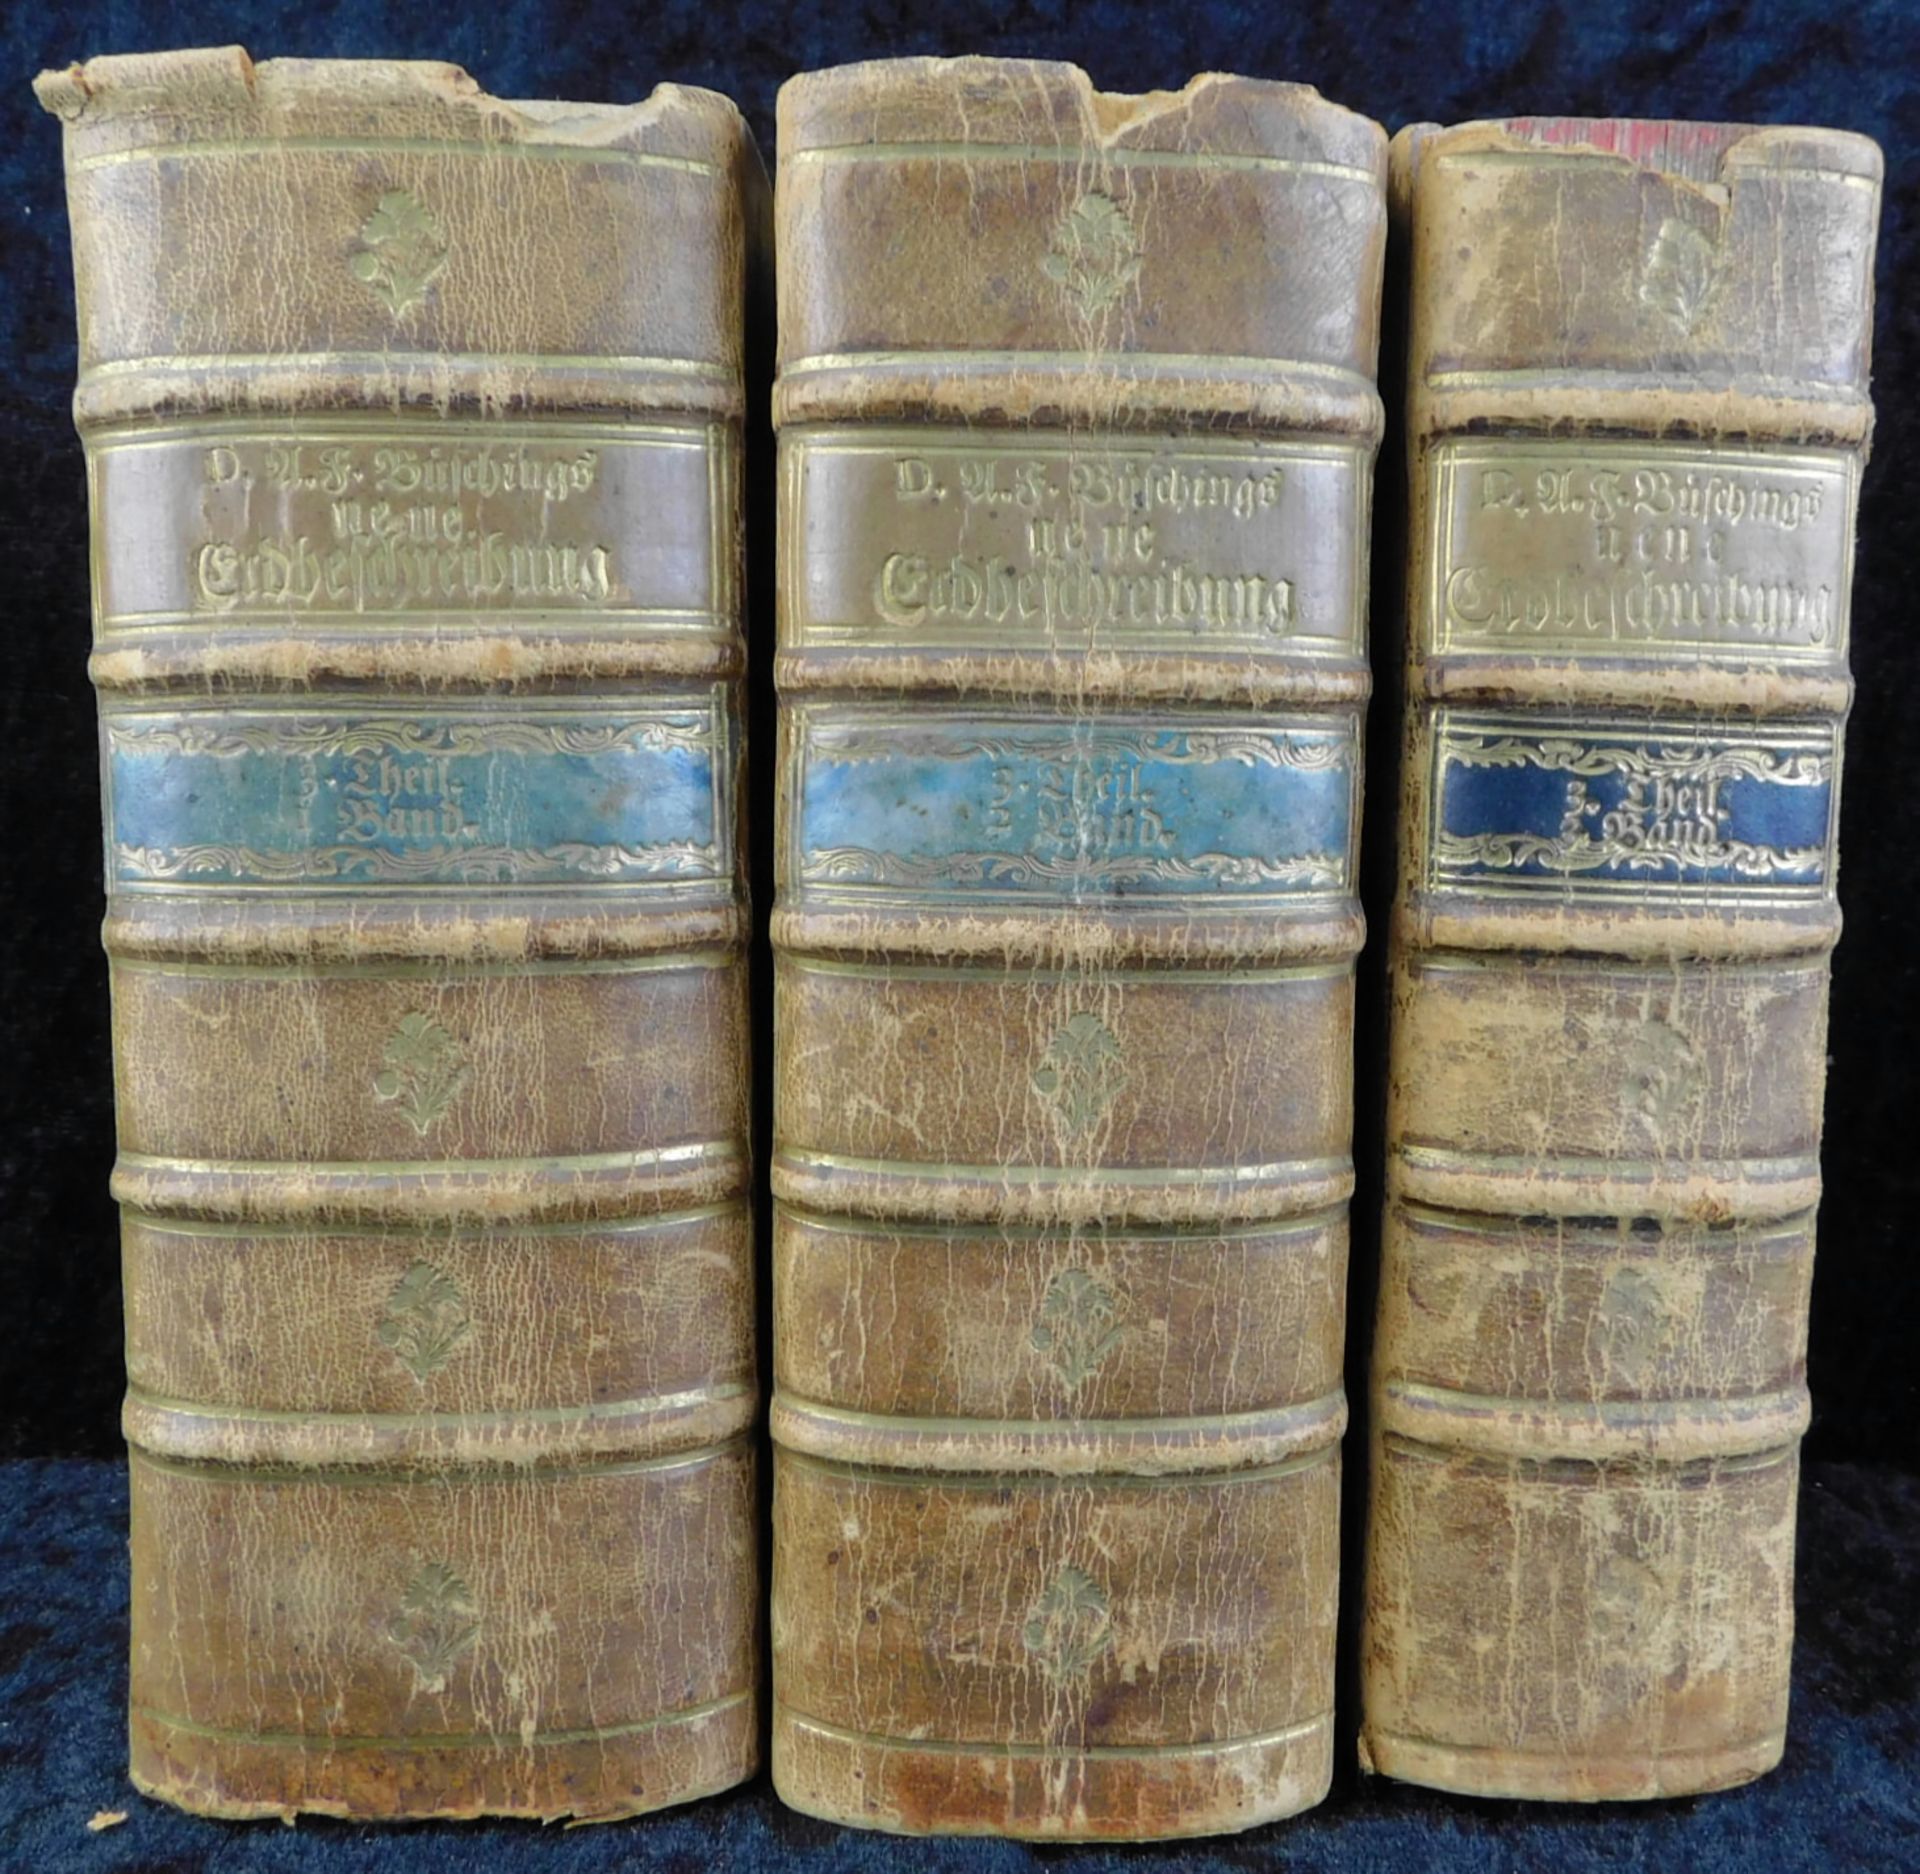 Neue Erdbeschreibung 3 Bände, Autor Anton Friderich Büsching, C.E. Bohn Verlag Hamburg, 1778